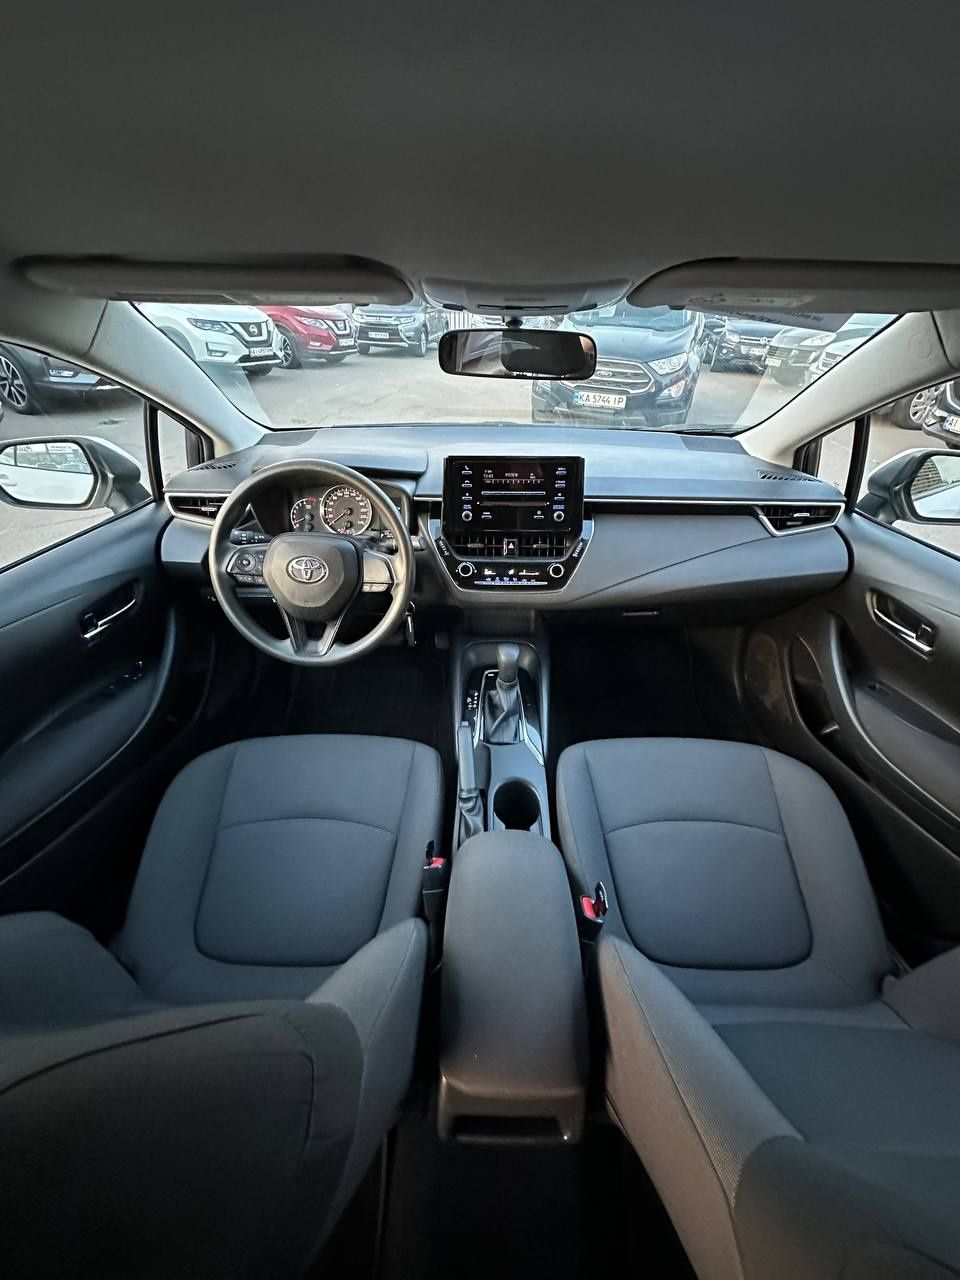 Toyota Corolla Официал
2021 г.в.